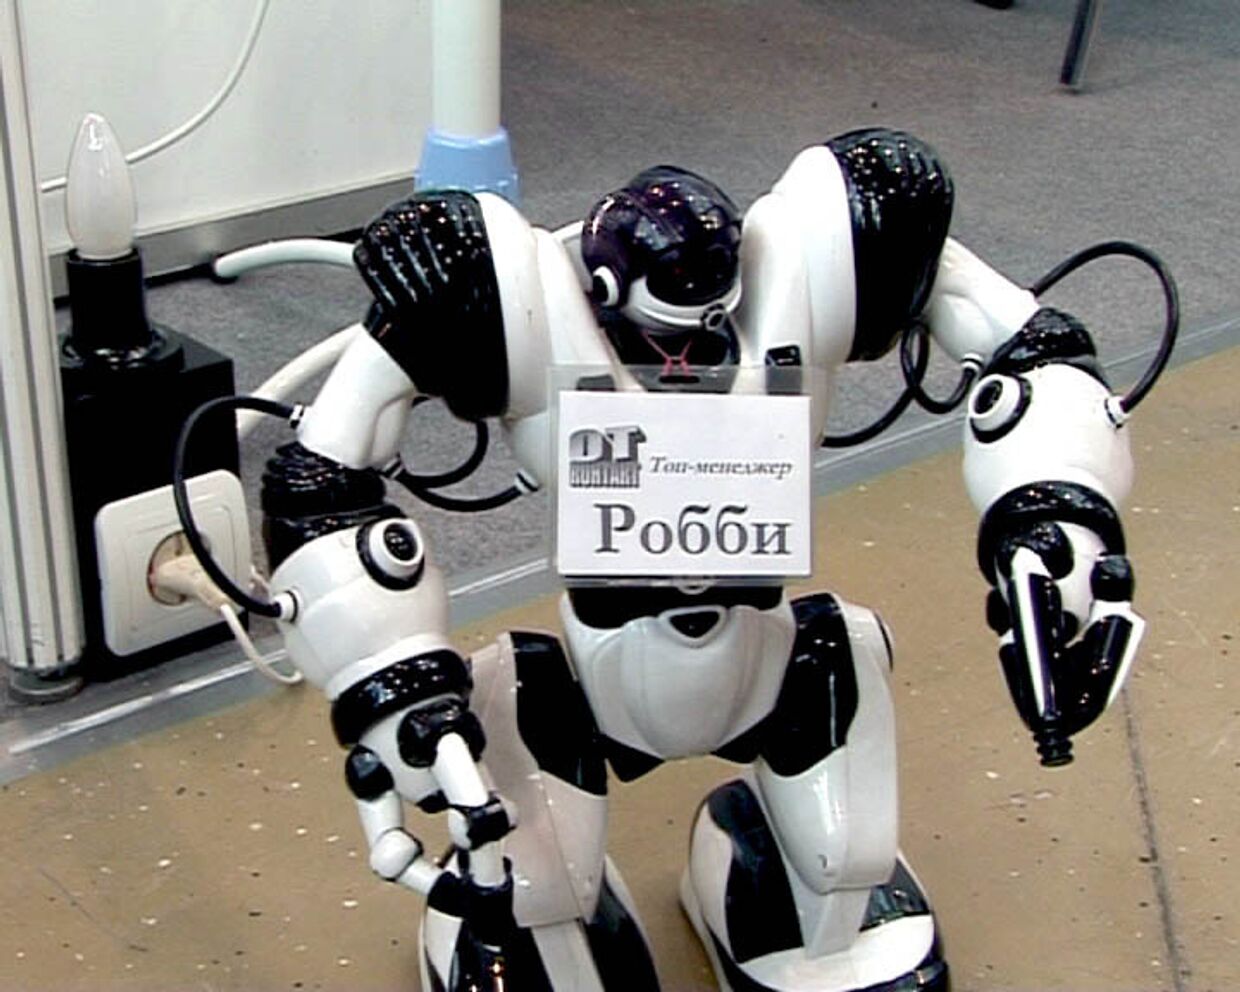 Общительный робот Роби. Новинка российских разработчиков